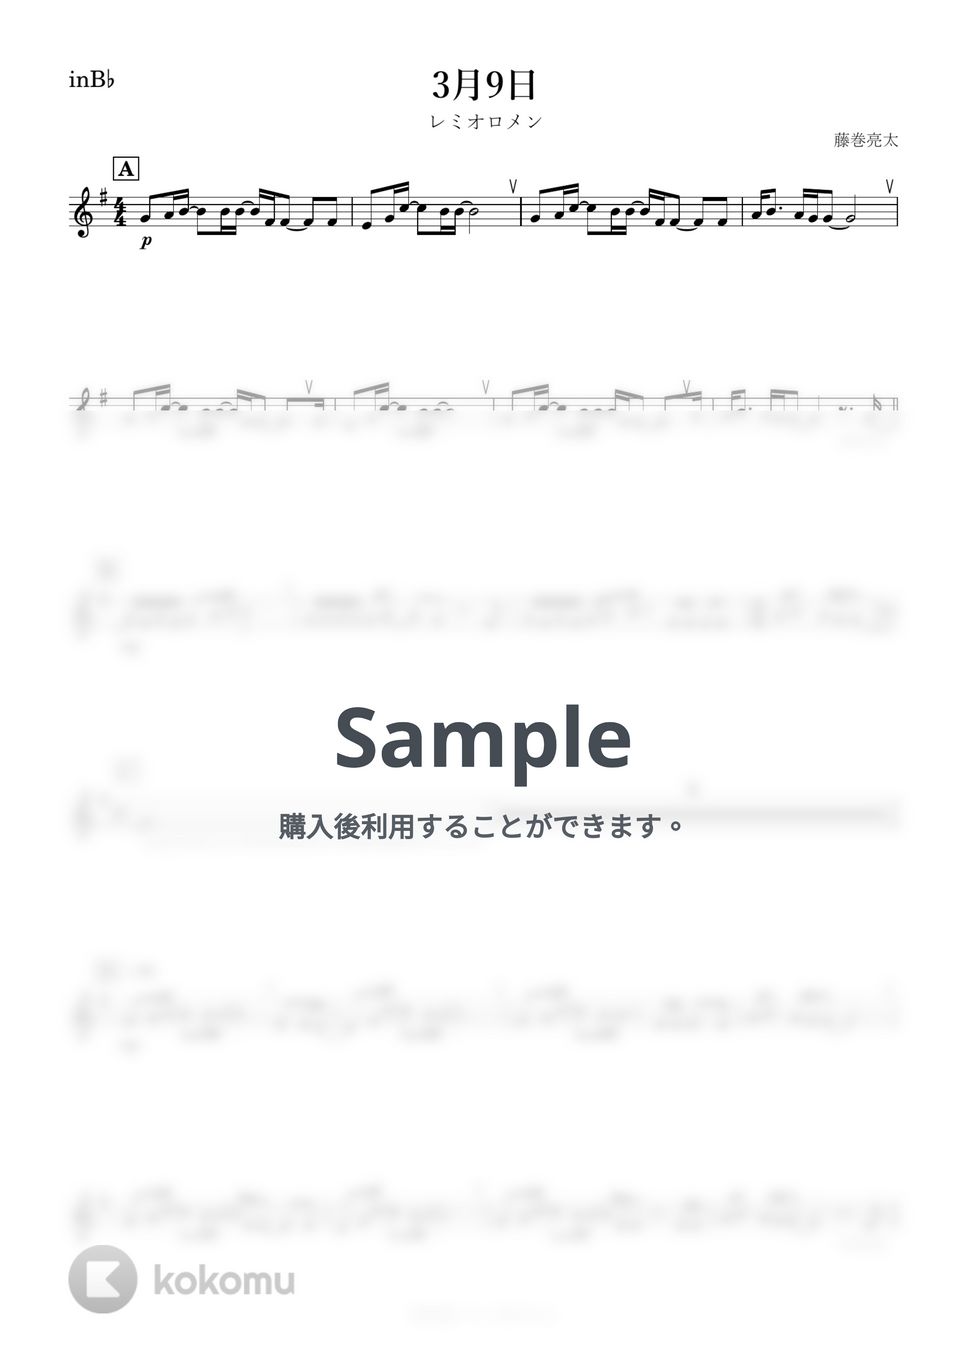 レミオロメン - 3月9日 (B♭) by kanamusic